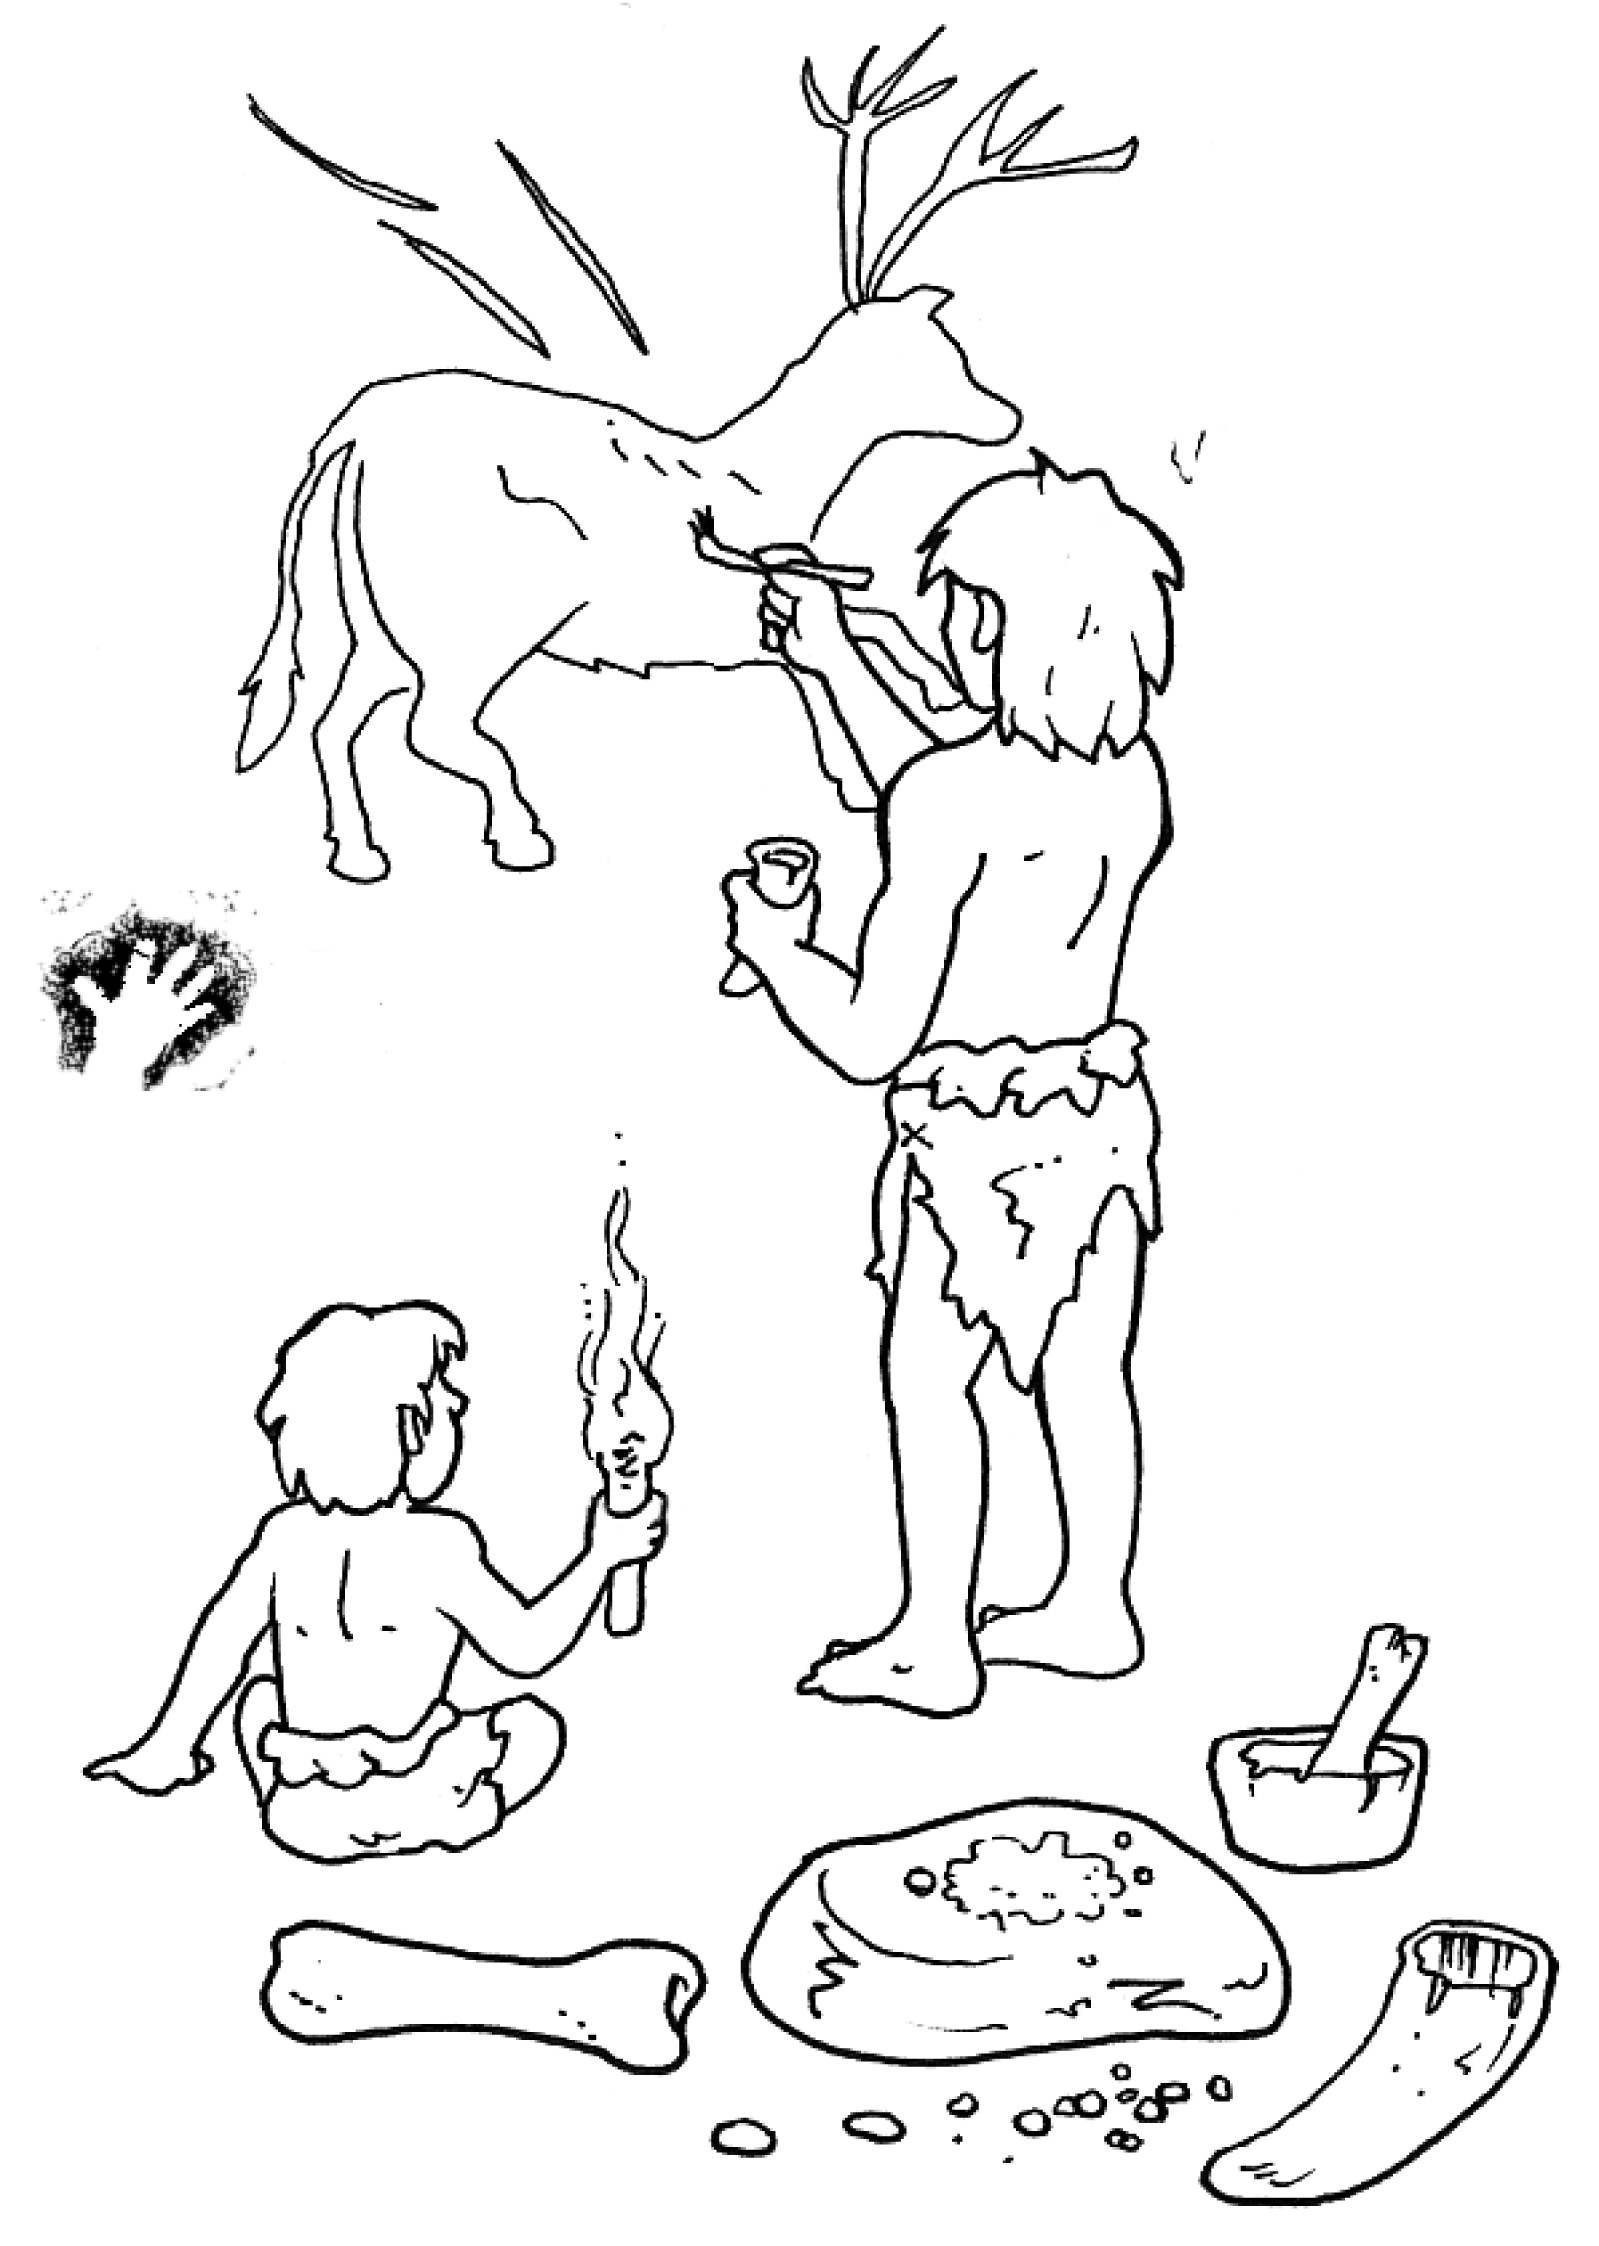 Нарисовать древнего человека, как нарисовать древнего человека поэтапно карандашом для начинающих